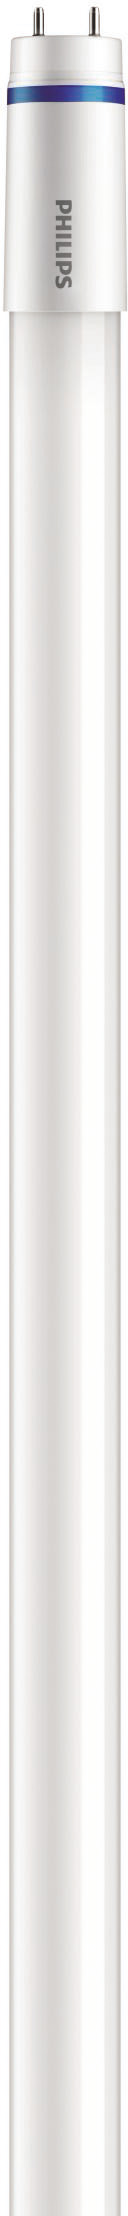 Philips Lighting LED-Tube T8 KVG/VVG G13, 865, 1500mm MASLEDtube #31666900 günstig online kaufen